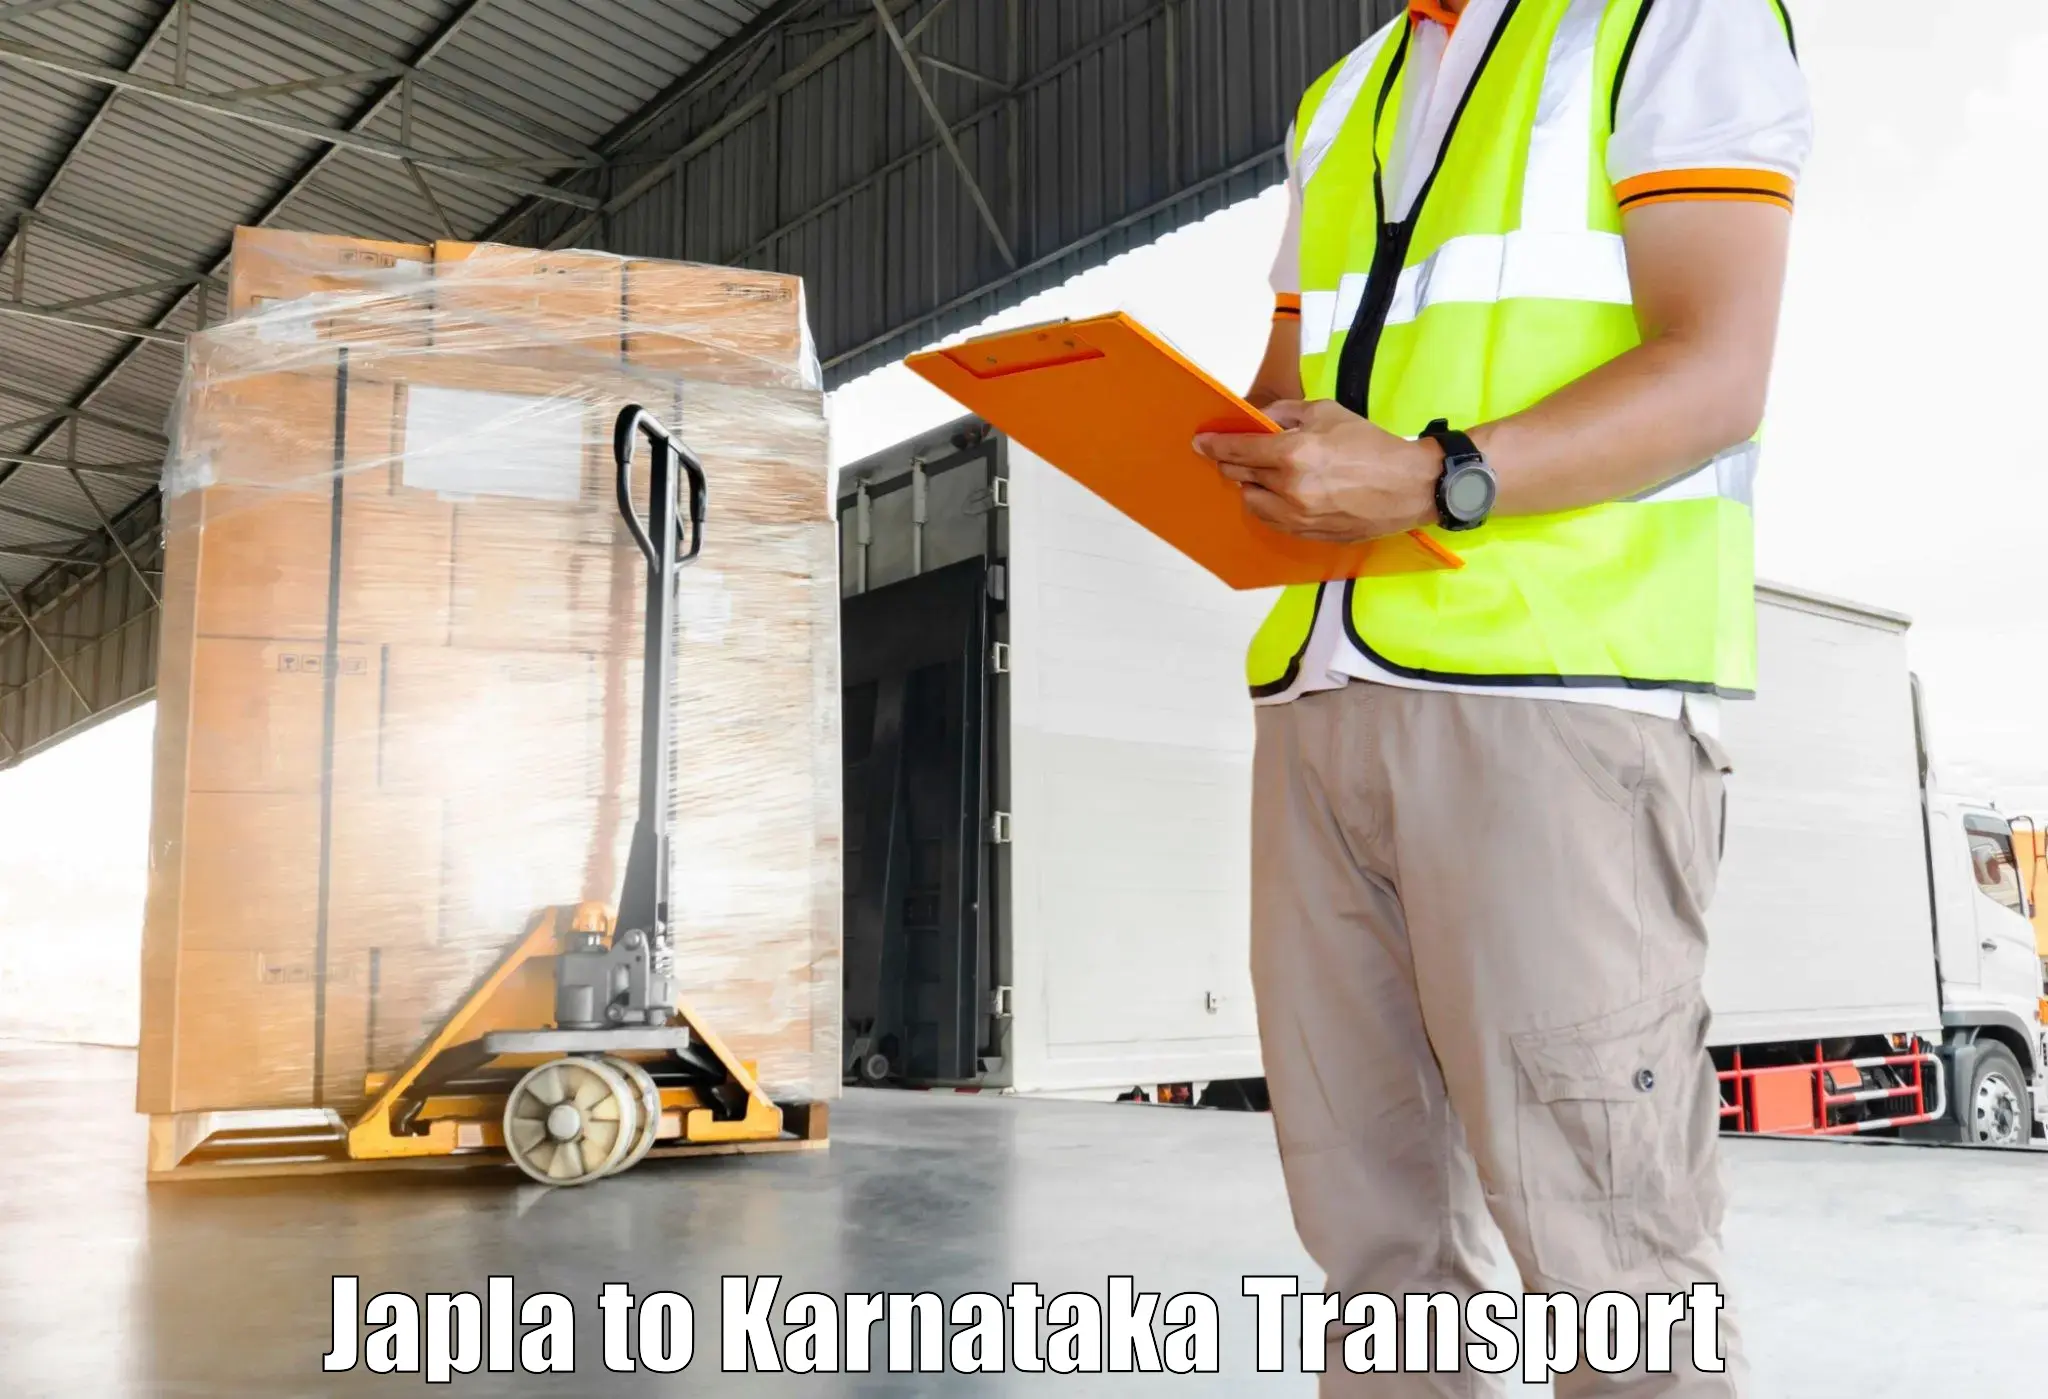 Daily transport service Japla to Udupi